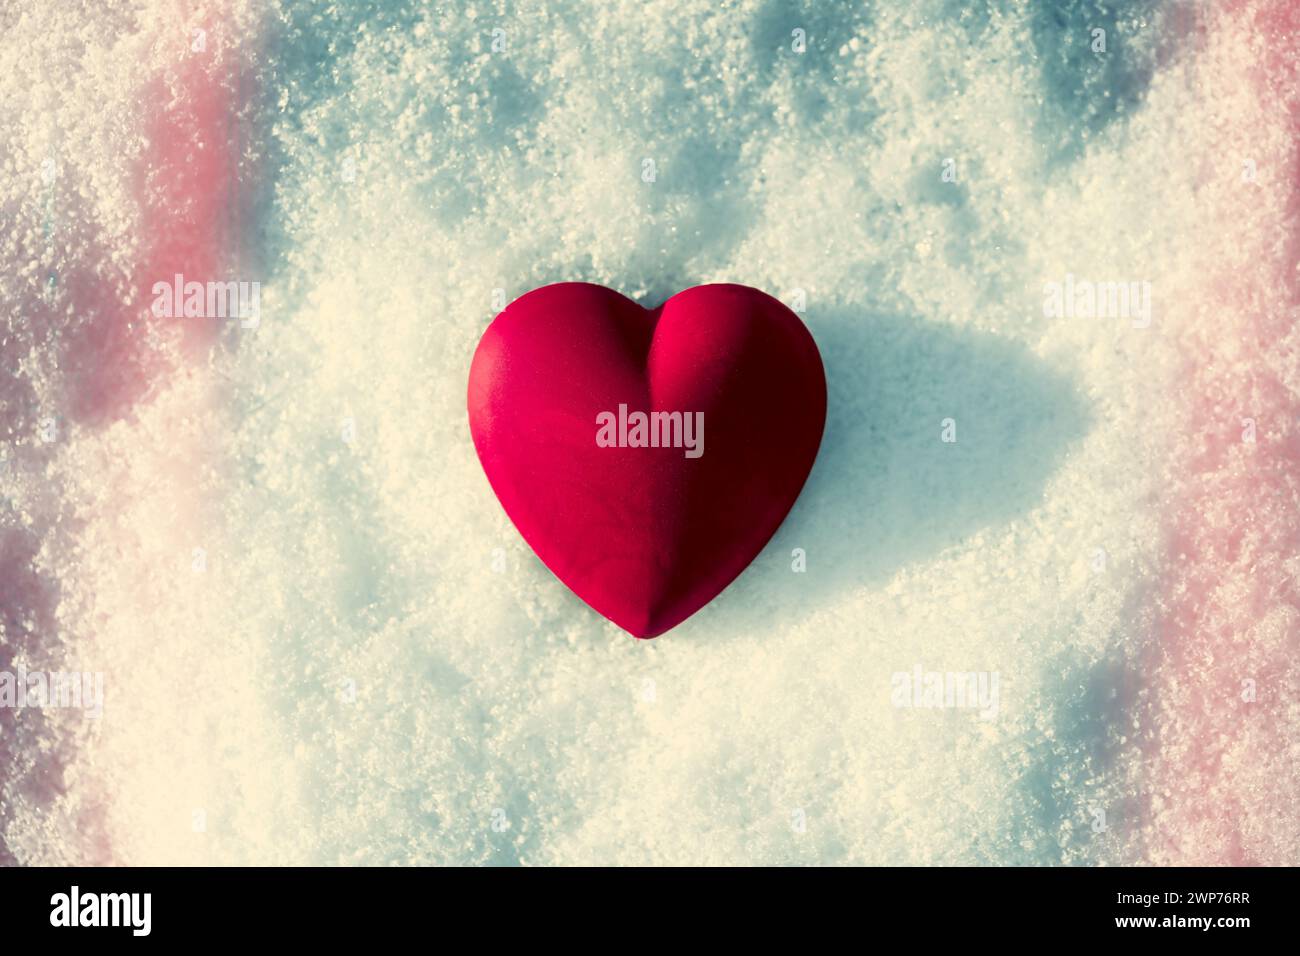 Herz auf Schnee, eiskaltes Herz, enttäuschte Liebe, Trennung Stock Photo